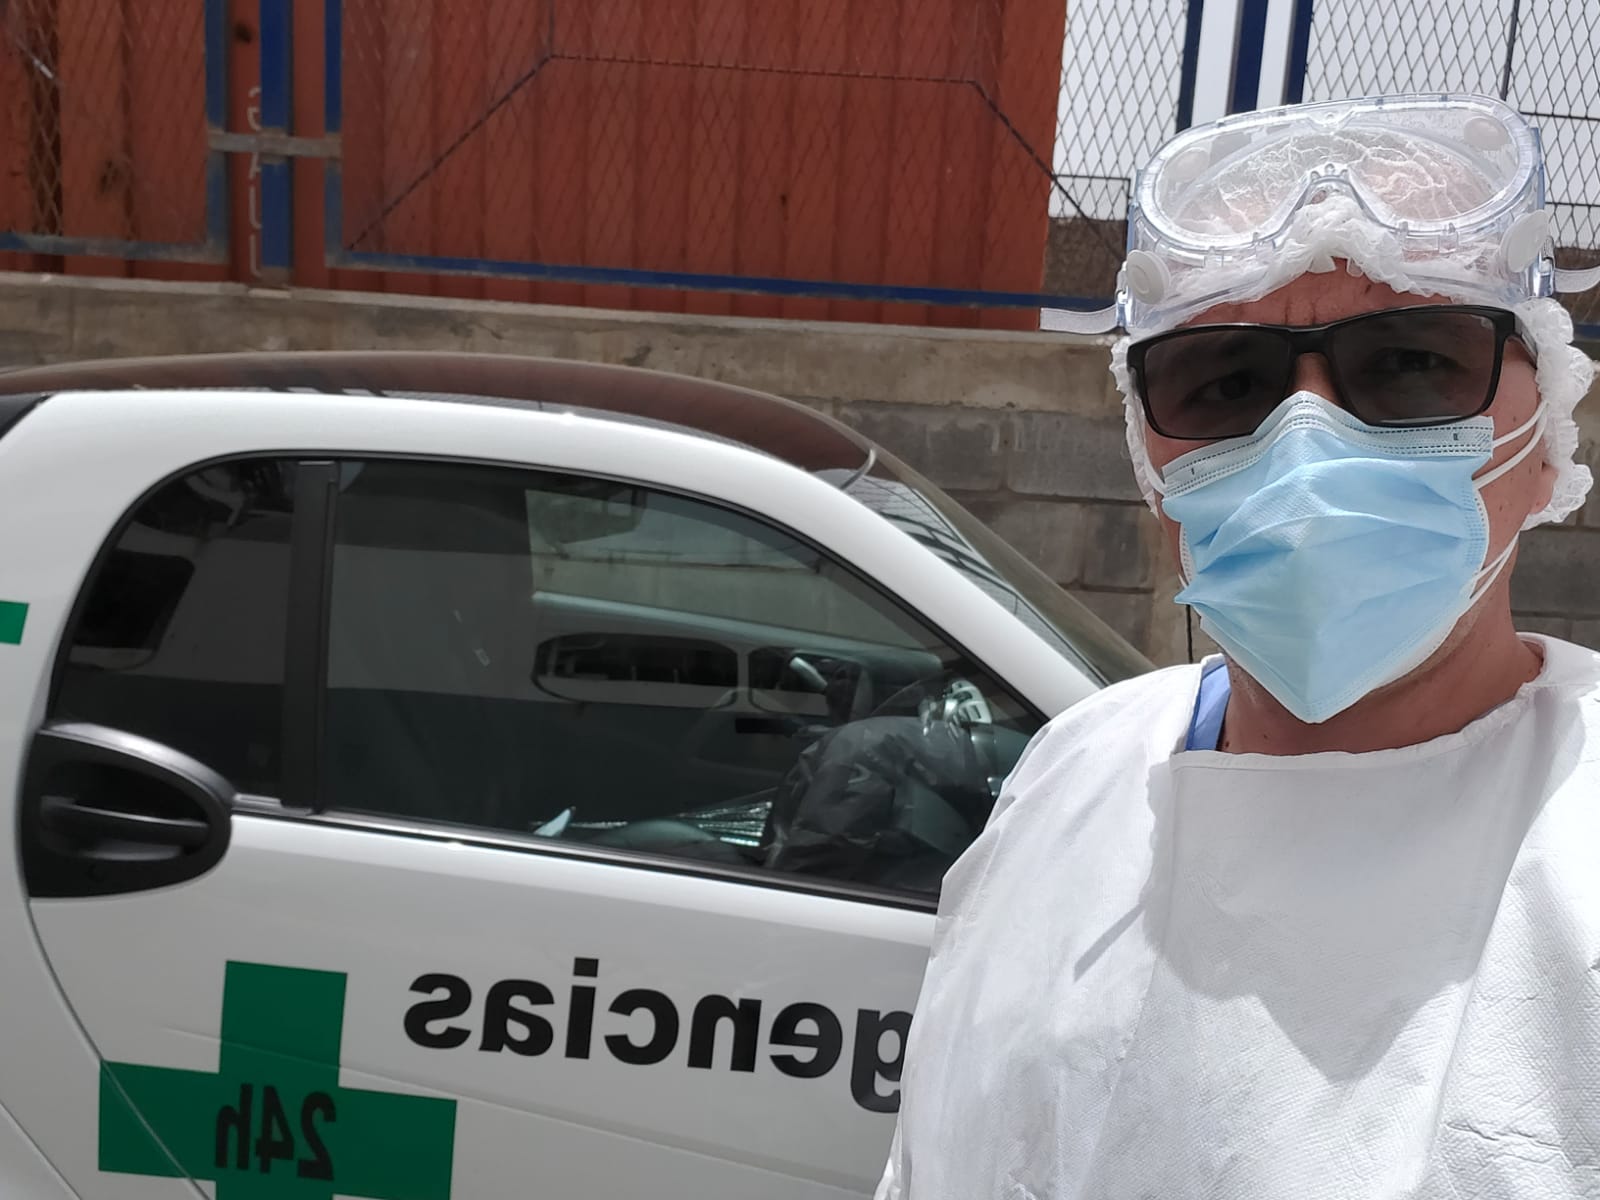 Urgencias Enfermería 24 horas Las Palmas - Enfermero Cualificado